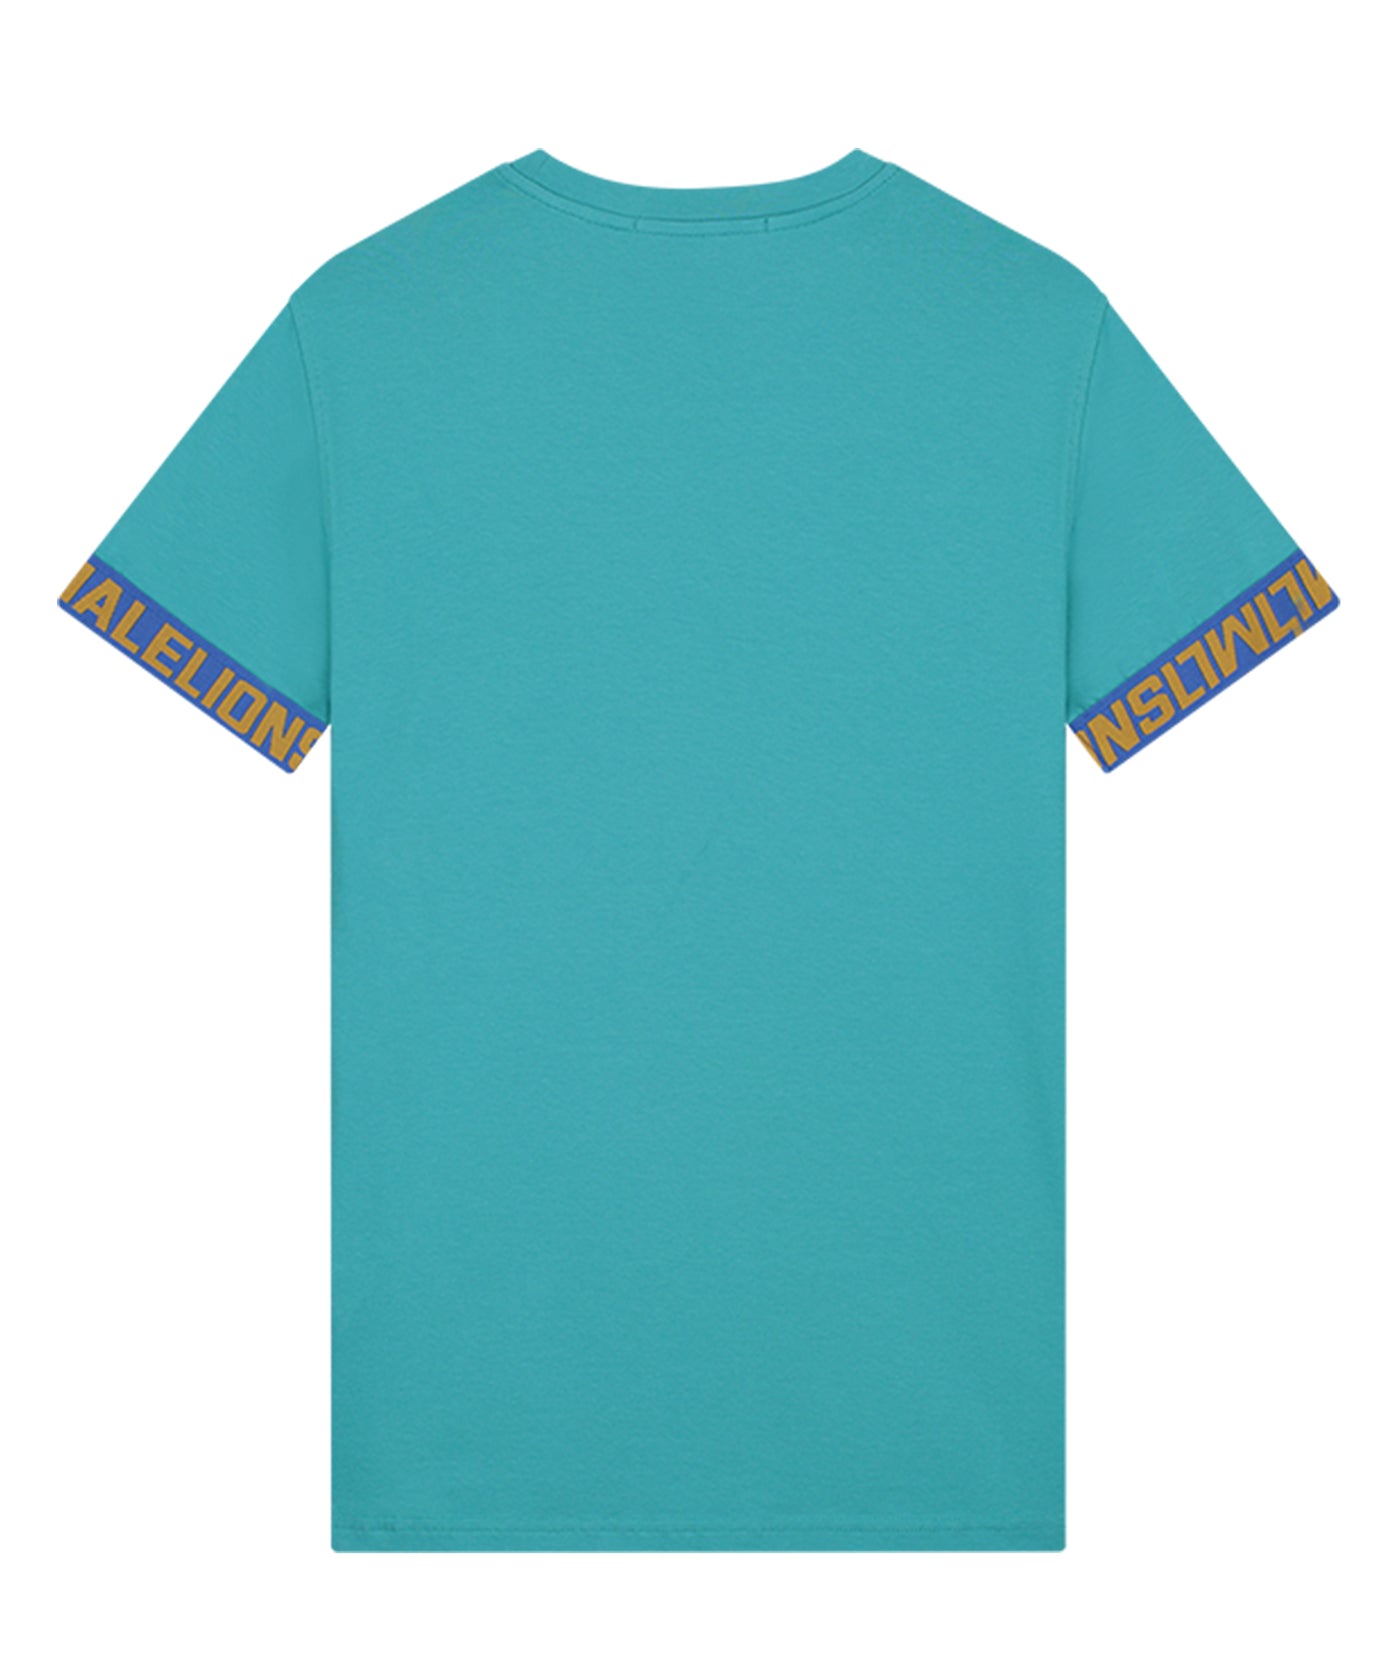 Malelions - Venetian - T-shirt - Aqua Blue/gold